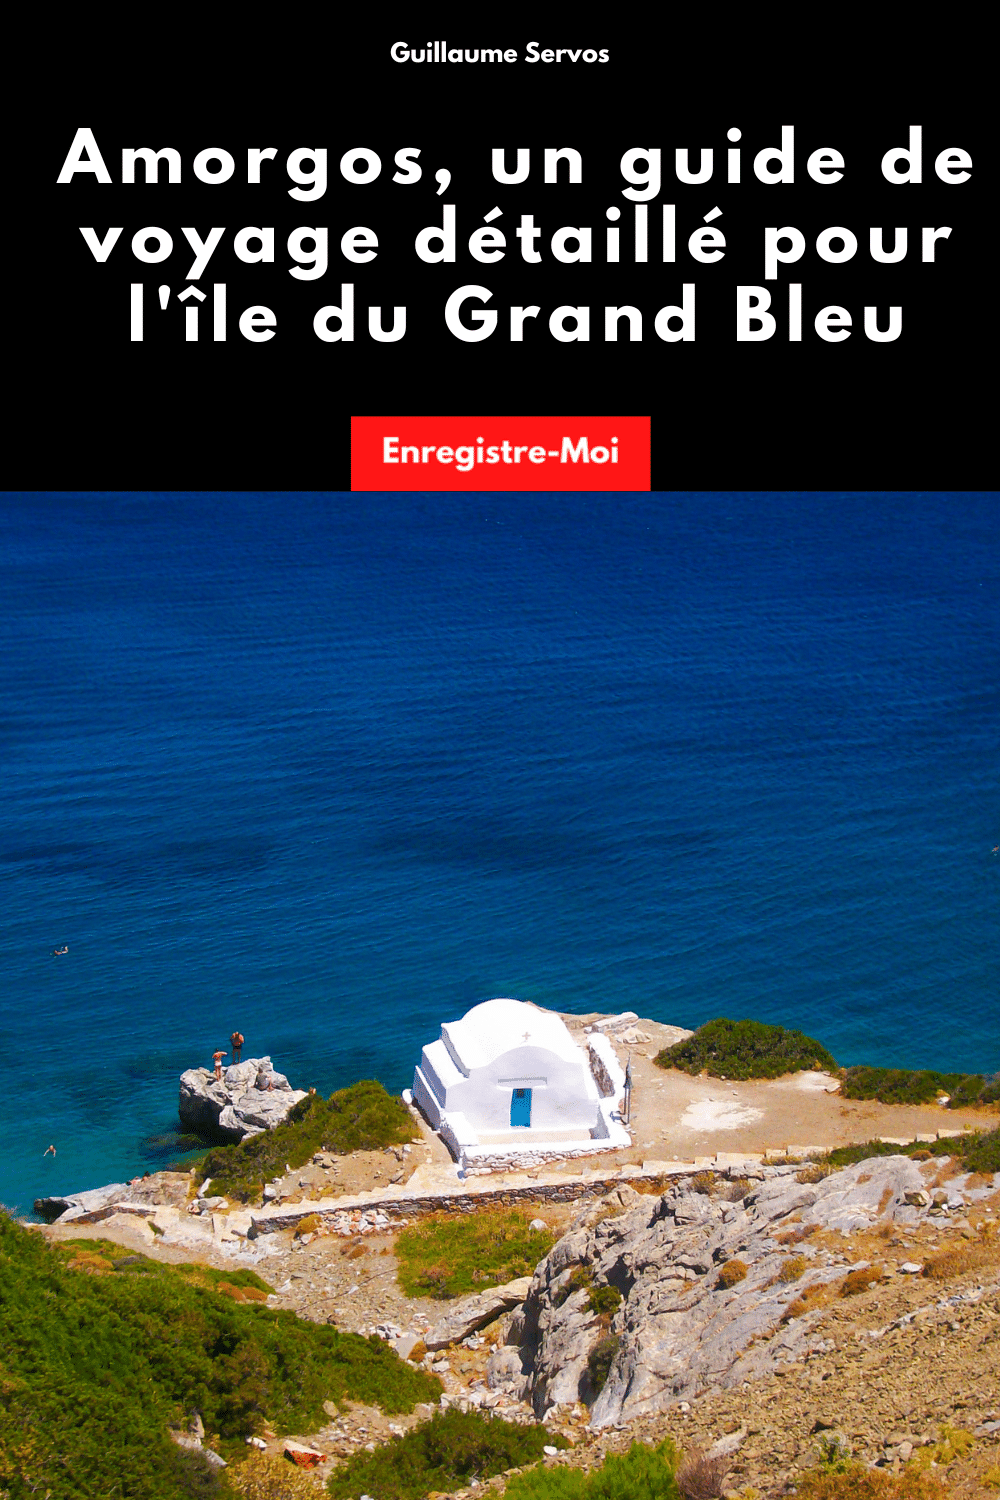 Amorgos, un guide de voyage détaillé pour l'île du Grand Bleu